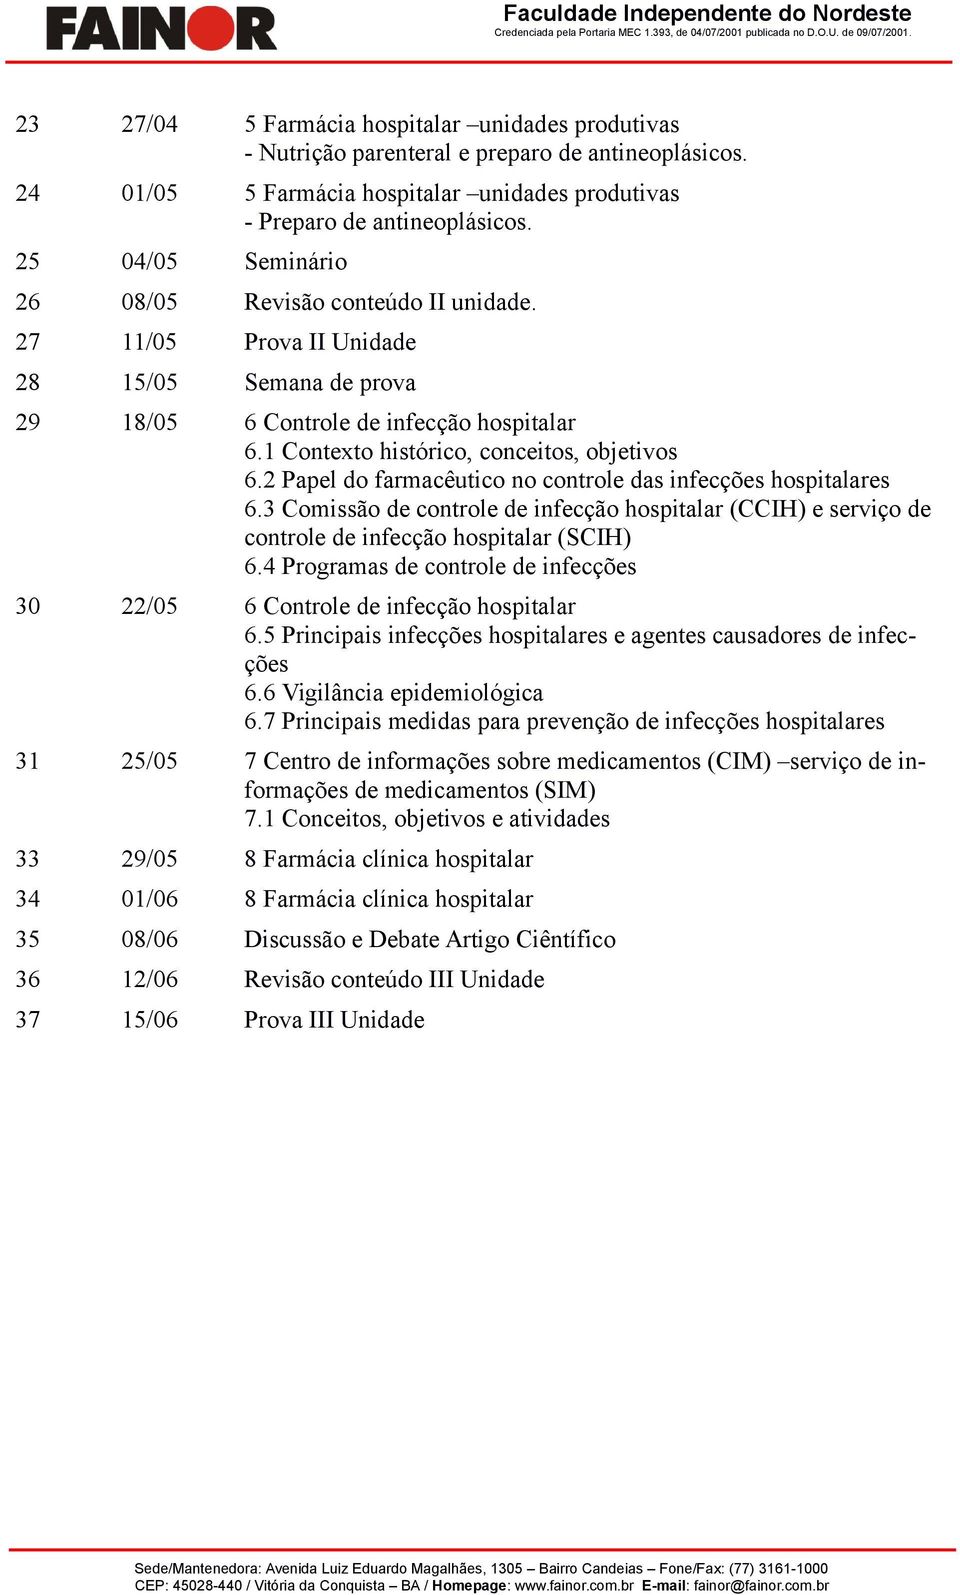 2 Papel do farmacêutico no controle das infecções hospitalares 6.3 Comissão de controle de infecção hospitalar (CCIH) e serviço de controle de infecção hospitalar (SCIH) 6.